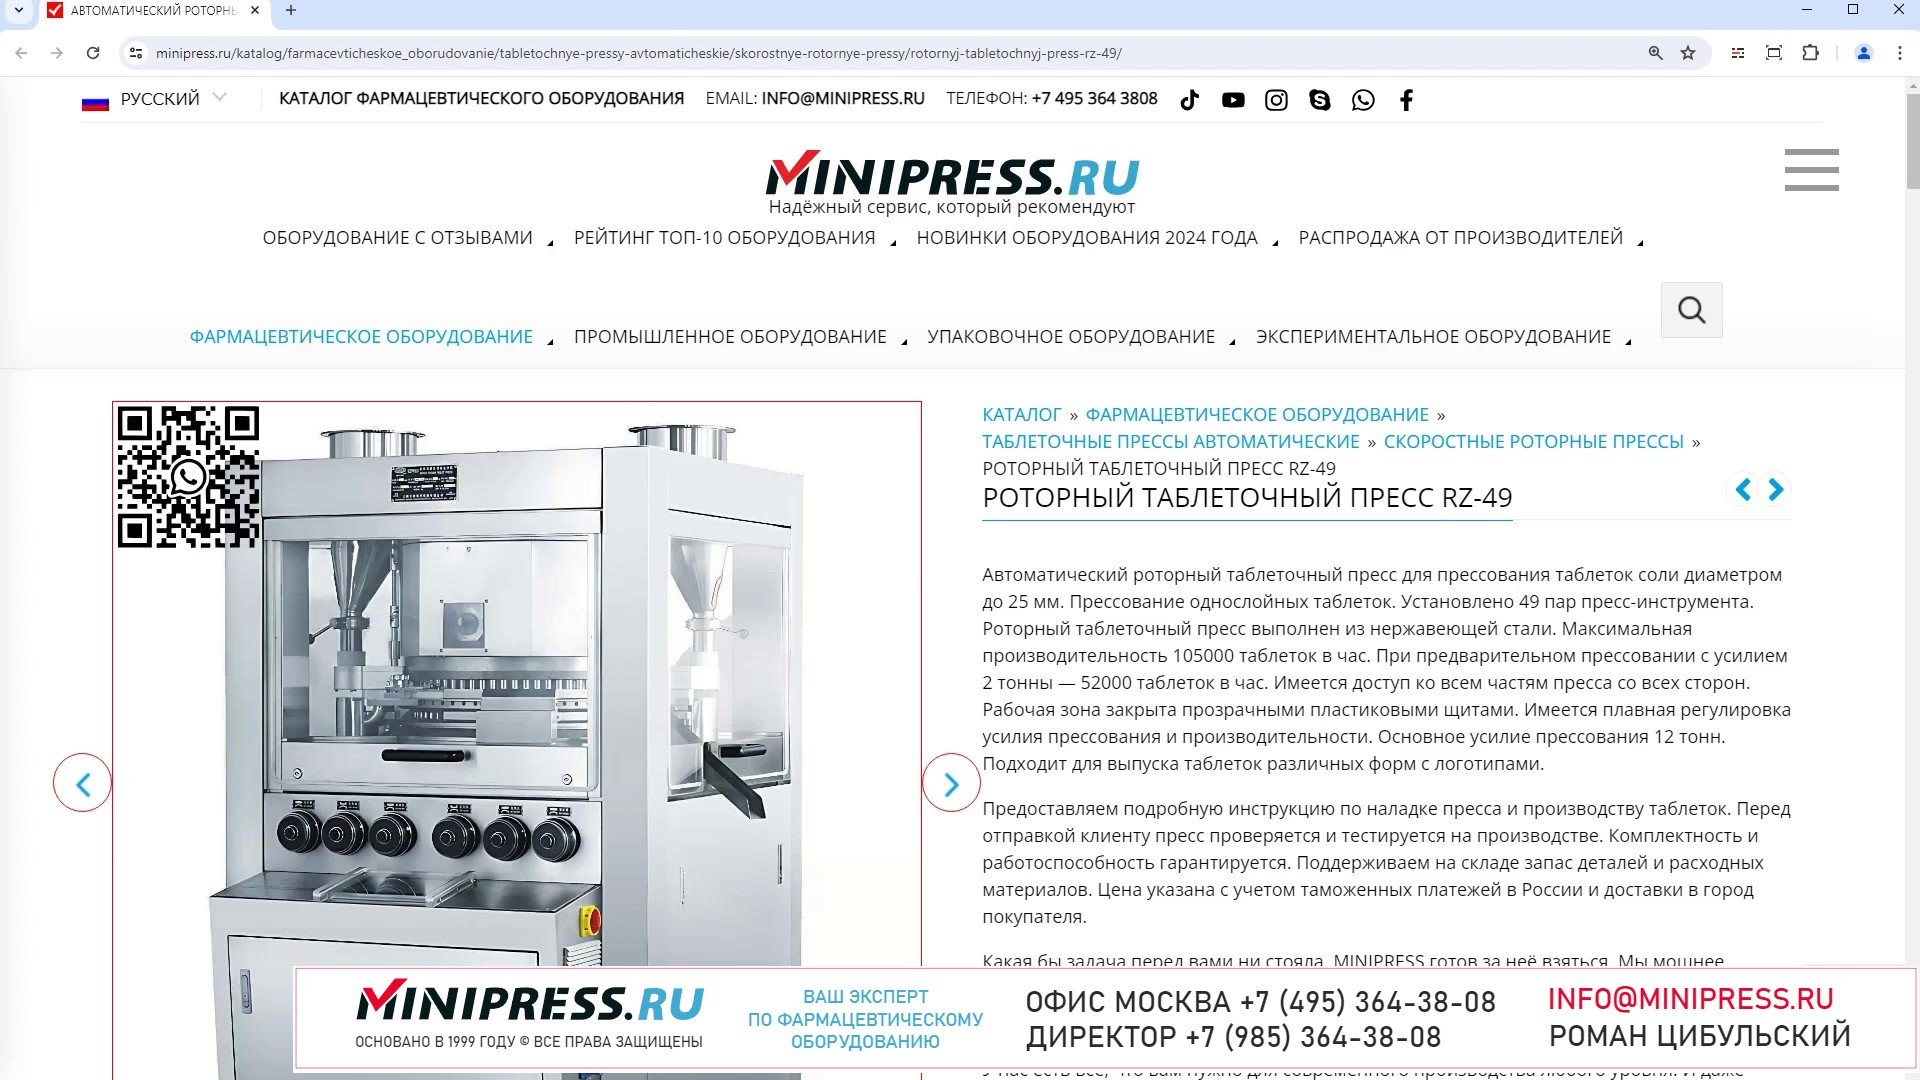 Minipress.ru Роторный таблеточный пресс RZ-49